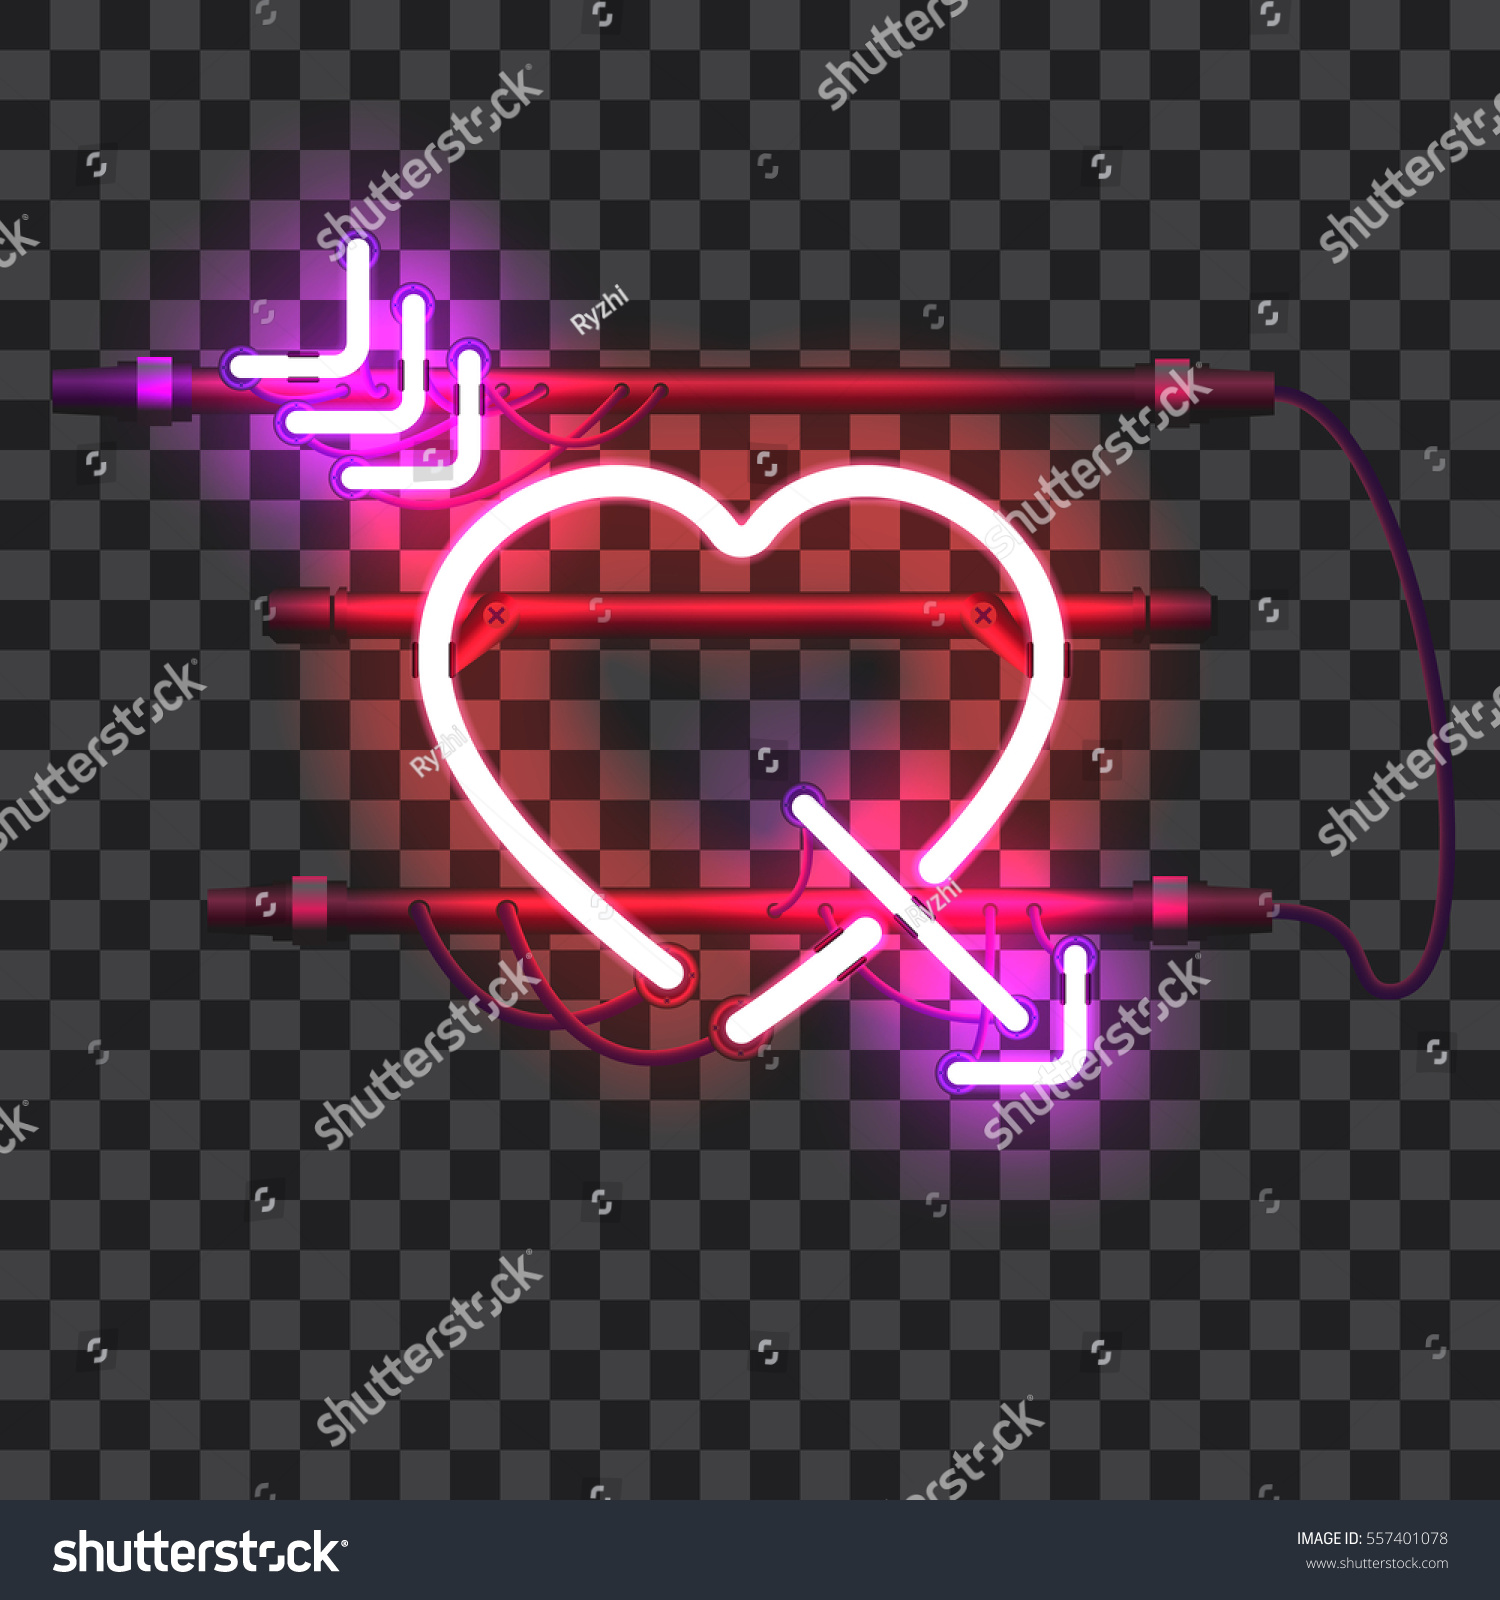 透明な背景に赤いネオンハートに紫色の矢印を刺し ホルダー ブラケット ワイヤーを付けます 輝く輝くネオン効果 バレンタインハート 愛と結婚のシンボル のベクター画像素材 ロイヤリティフリー